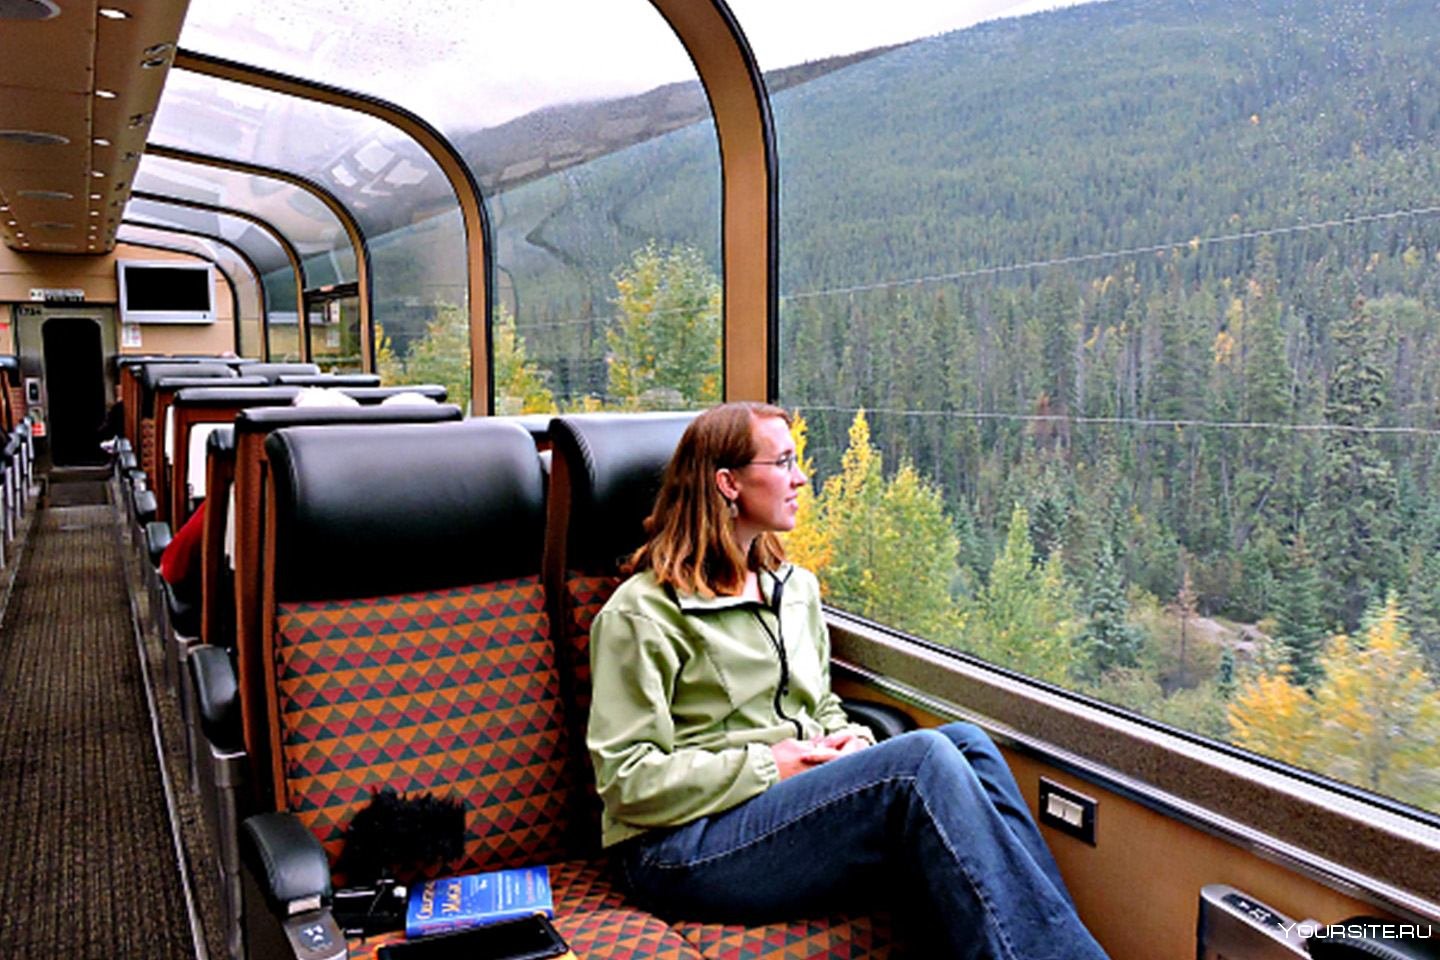 Купить тур на поезде. Путешествие на поезде. Туристический поезд. Туристско экскурсионные поезда. Транспорт для путешествий.